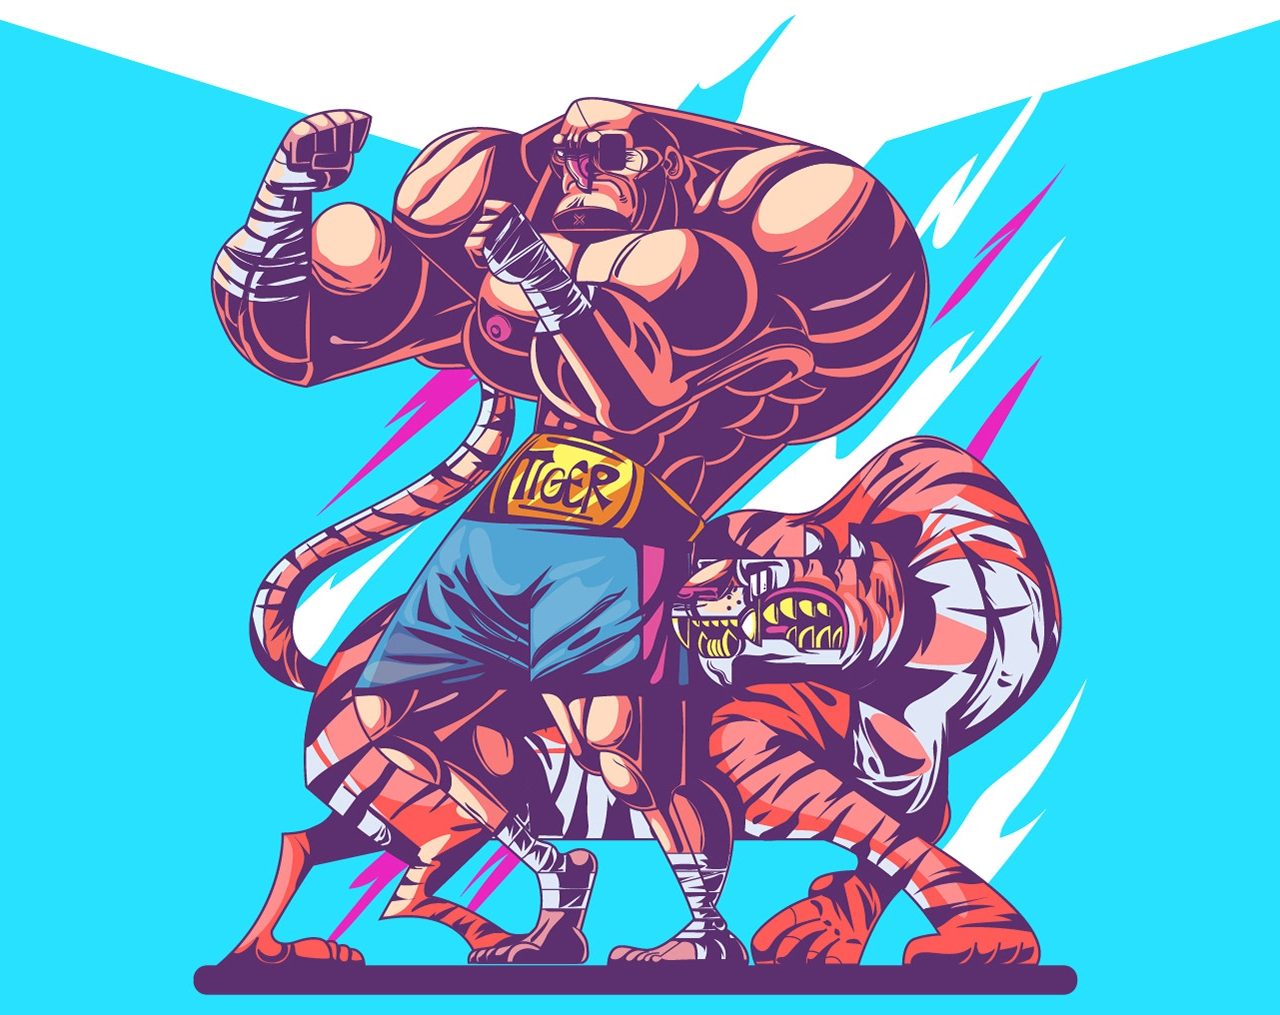 Street Fighter Art - HD Wallpaper 